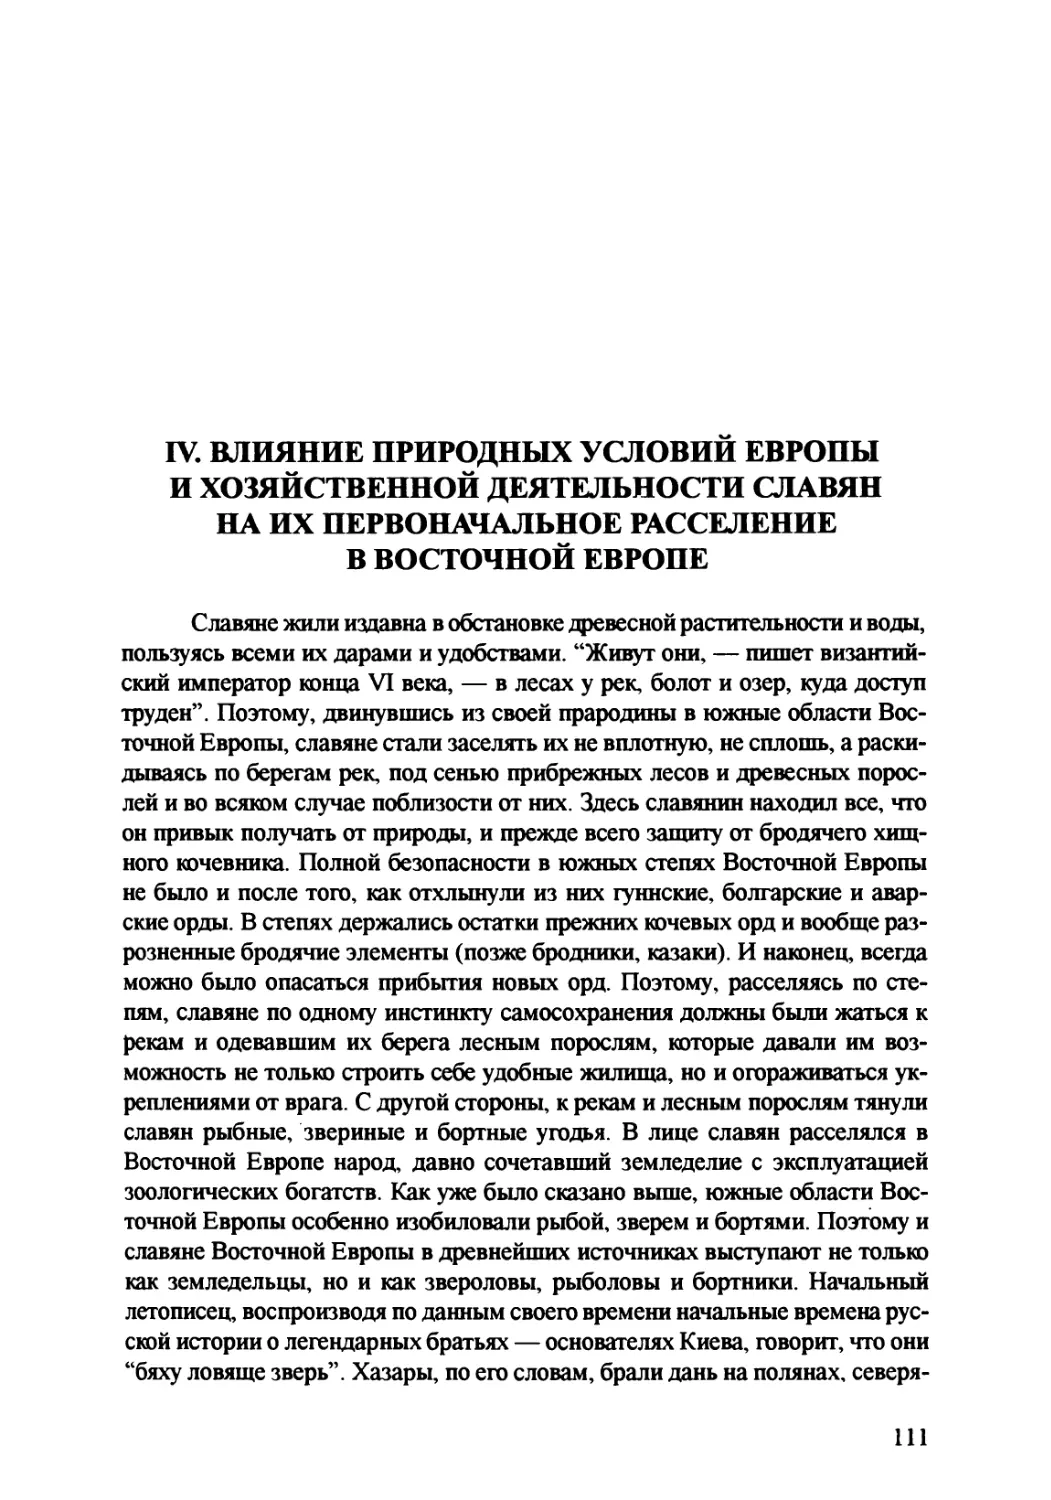 IV. Влияние природных условий и хозяйственной деятельности славян на их первоначальное расселение в Восточной Европе